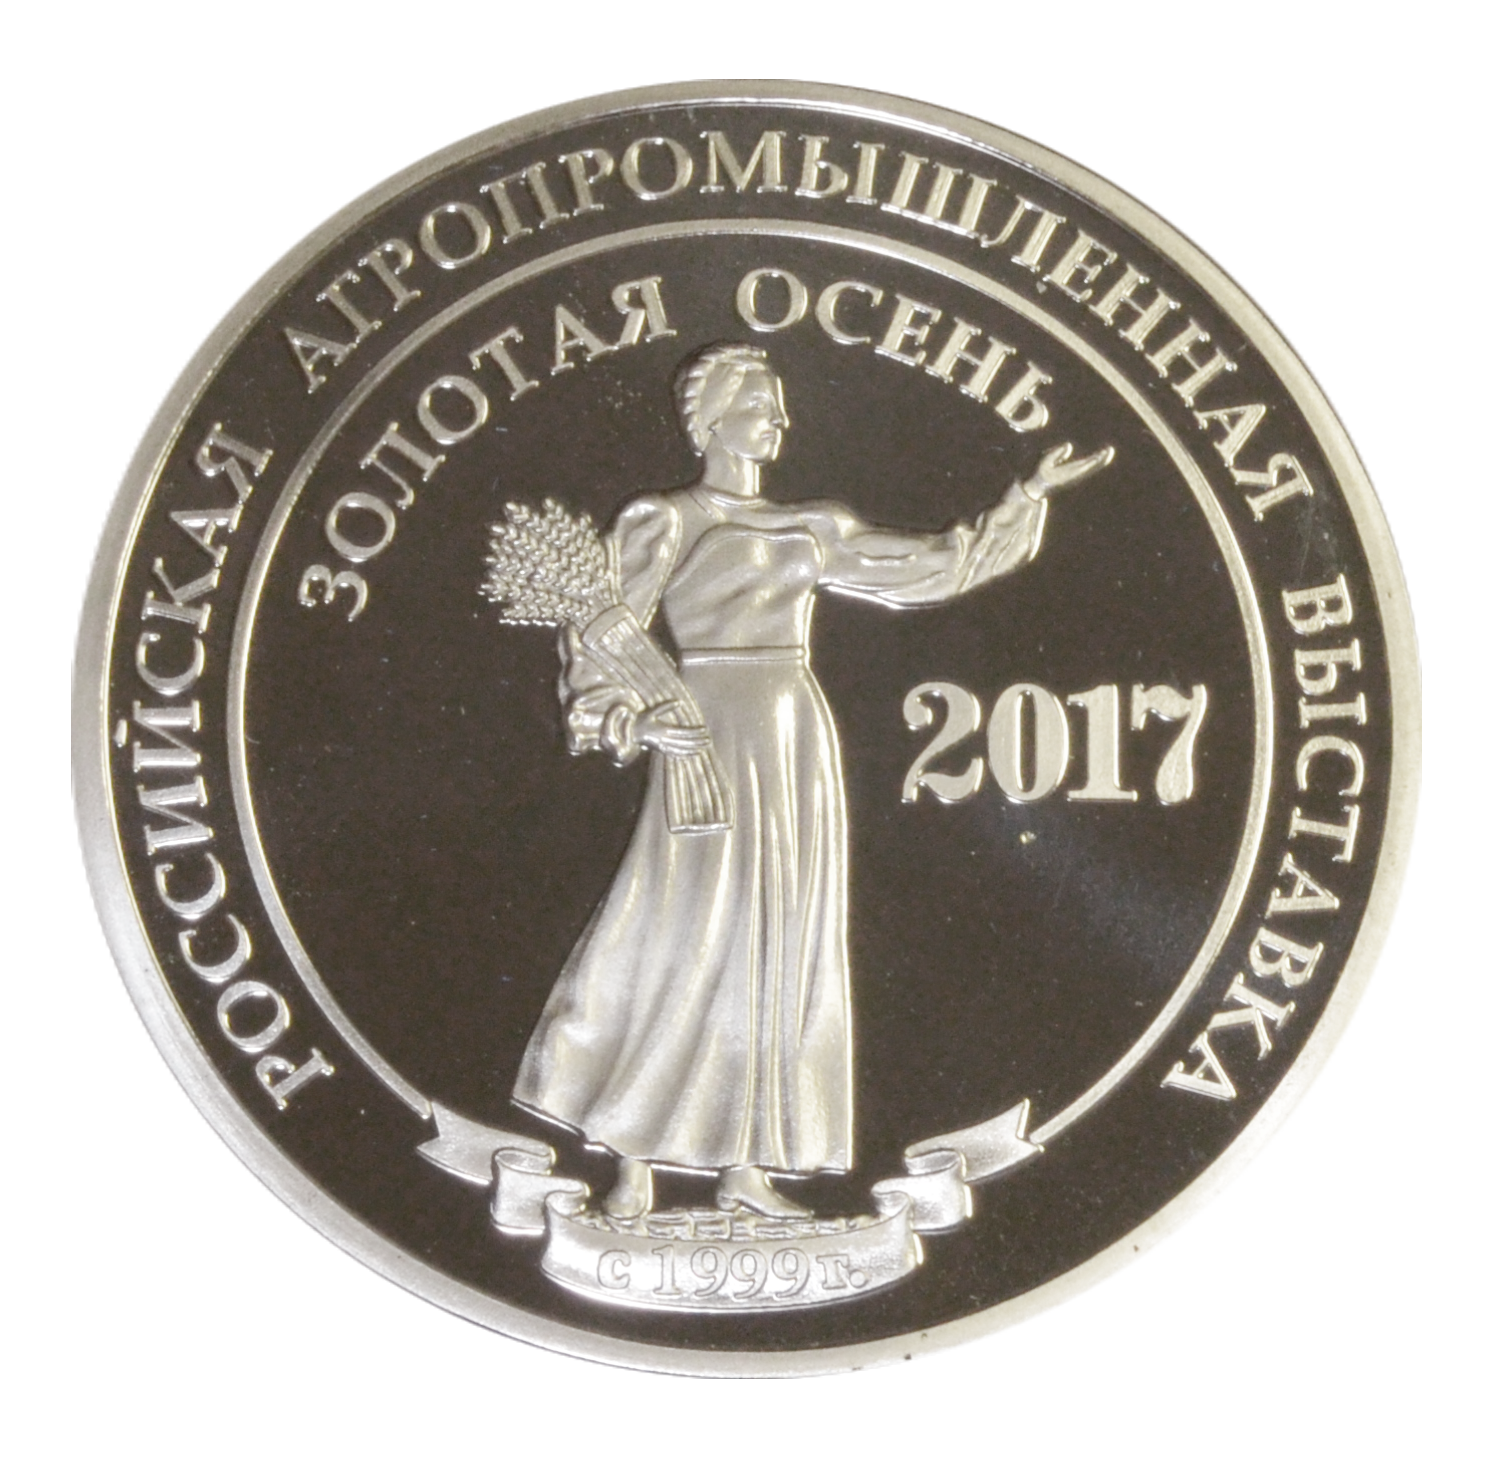 Серебряная медаль Выставки "Золотая осень 2017" Княжеская грудинка